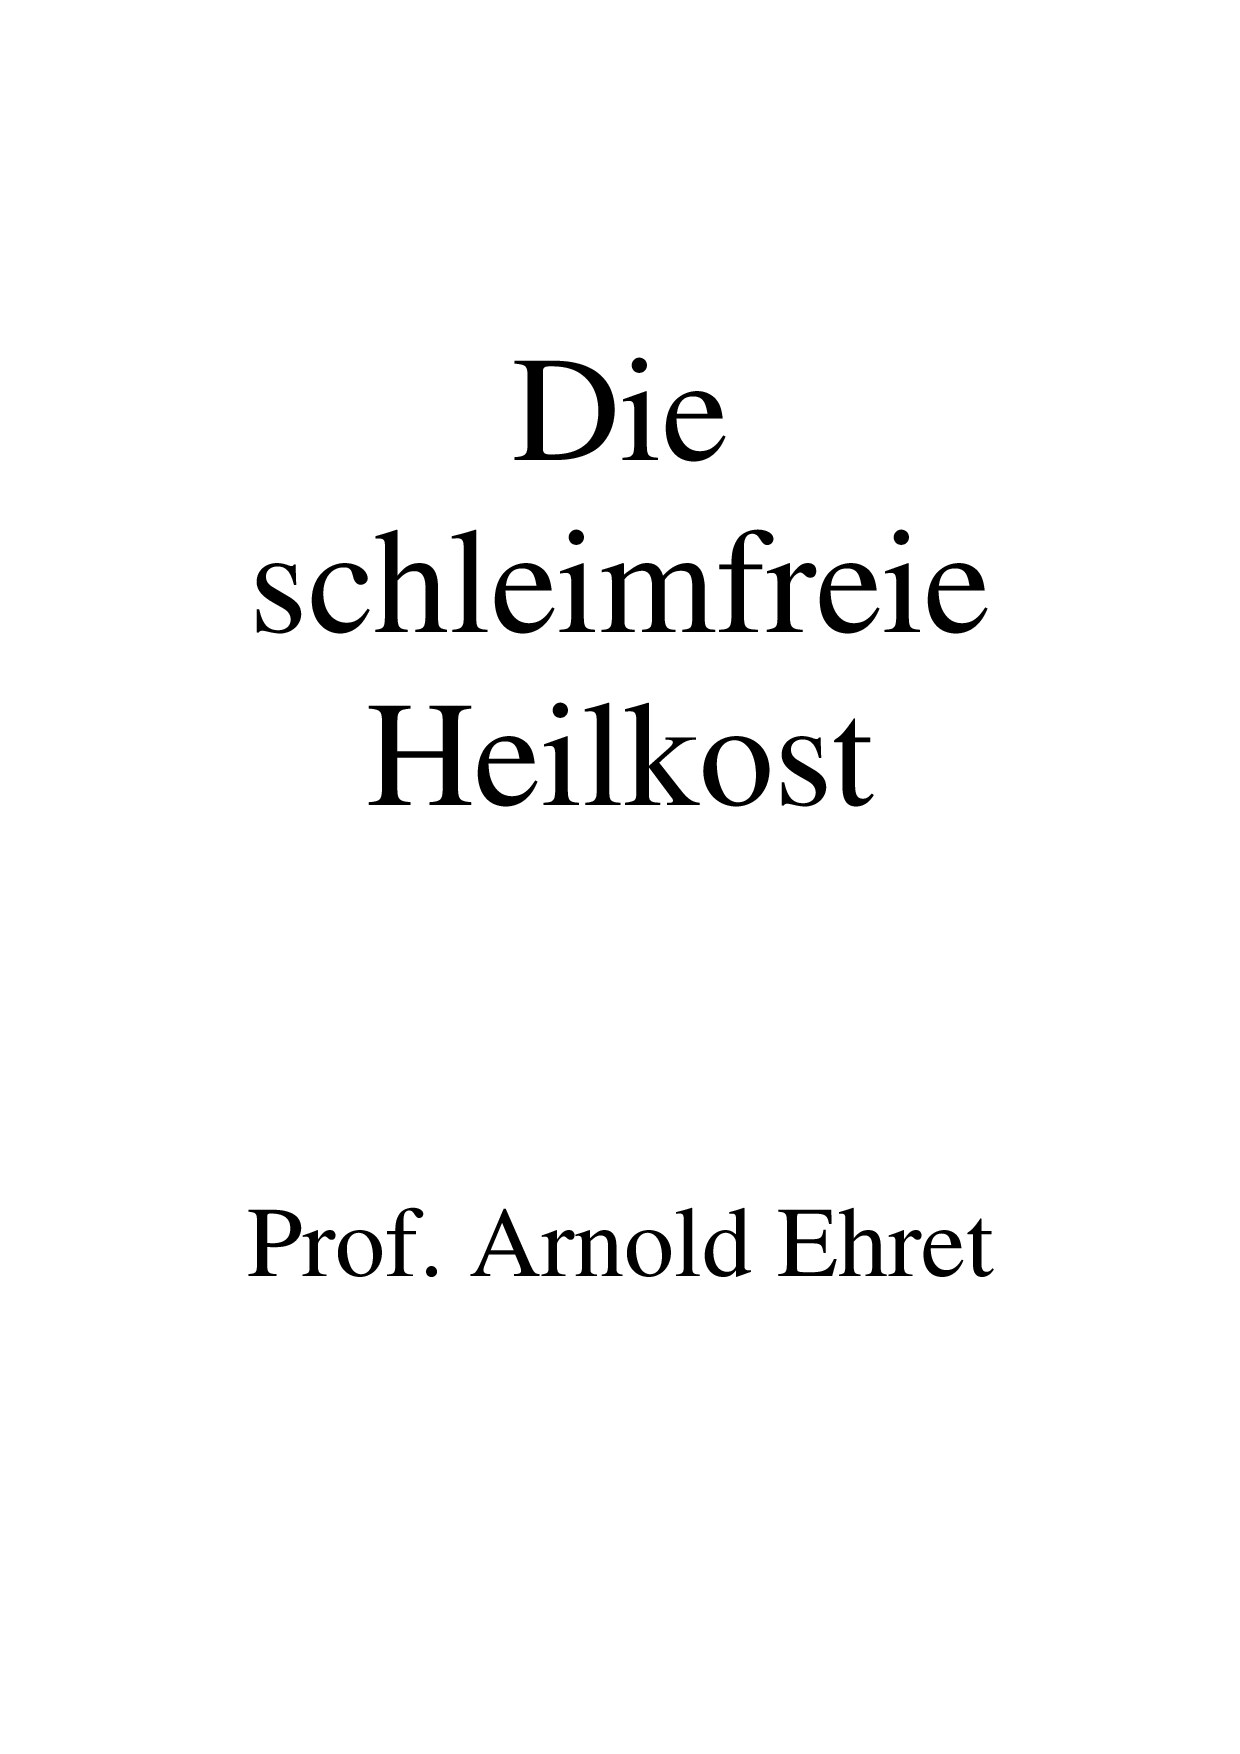 Arnold - Die schleimfreie Heilkost (1923, 94 S., Text)